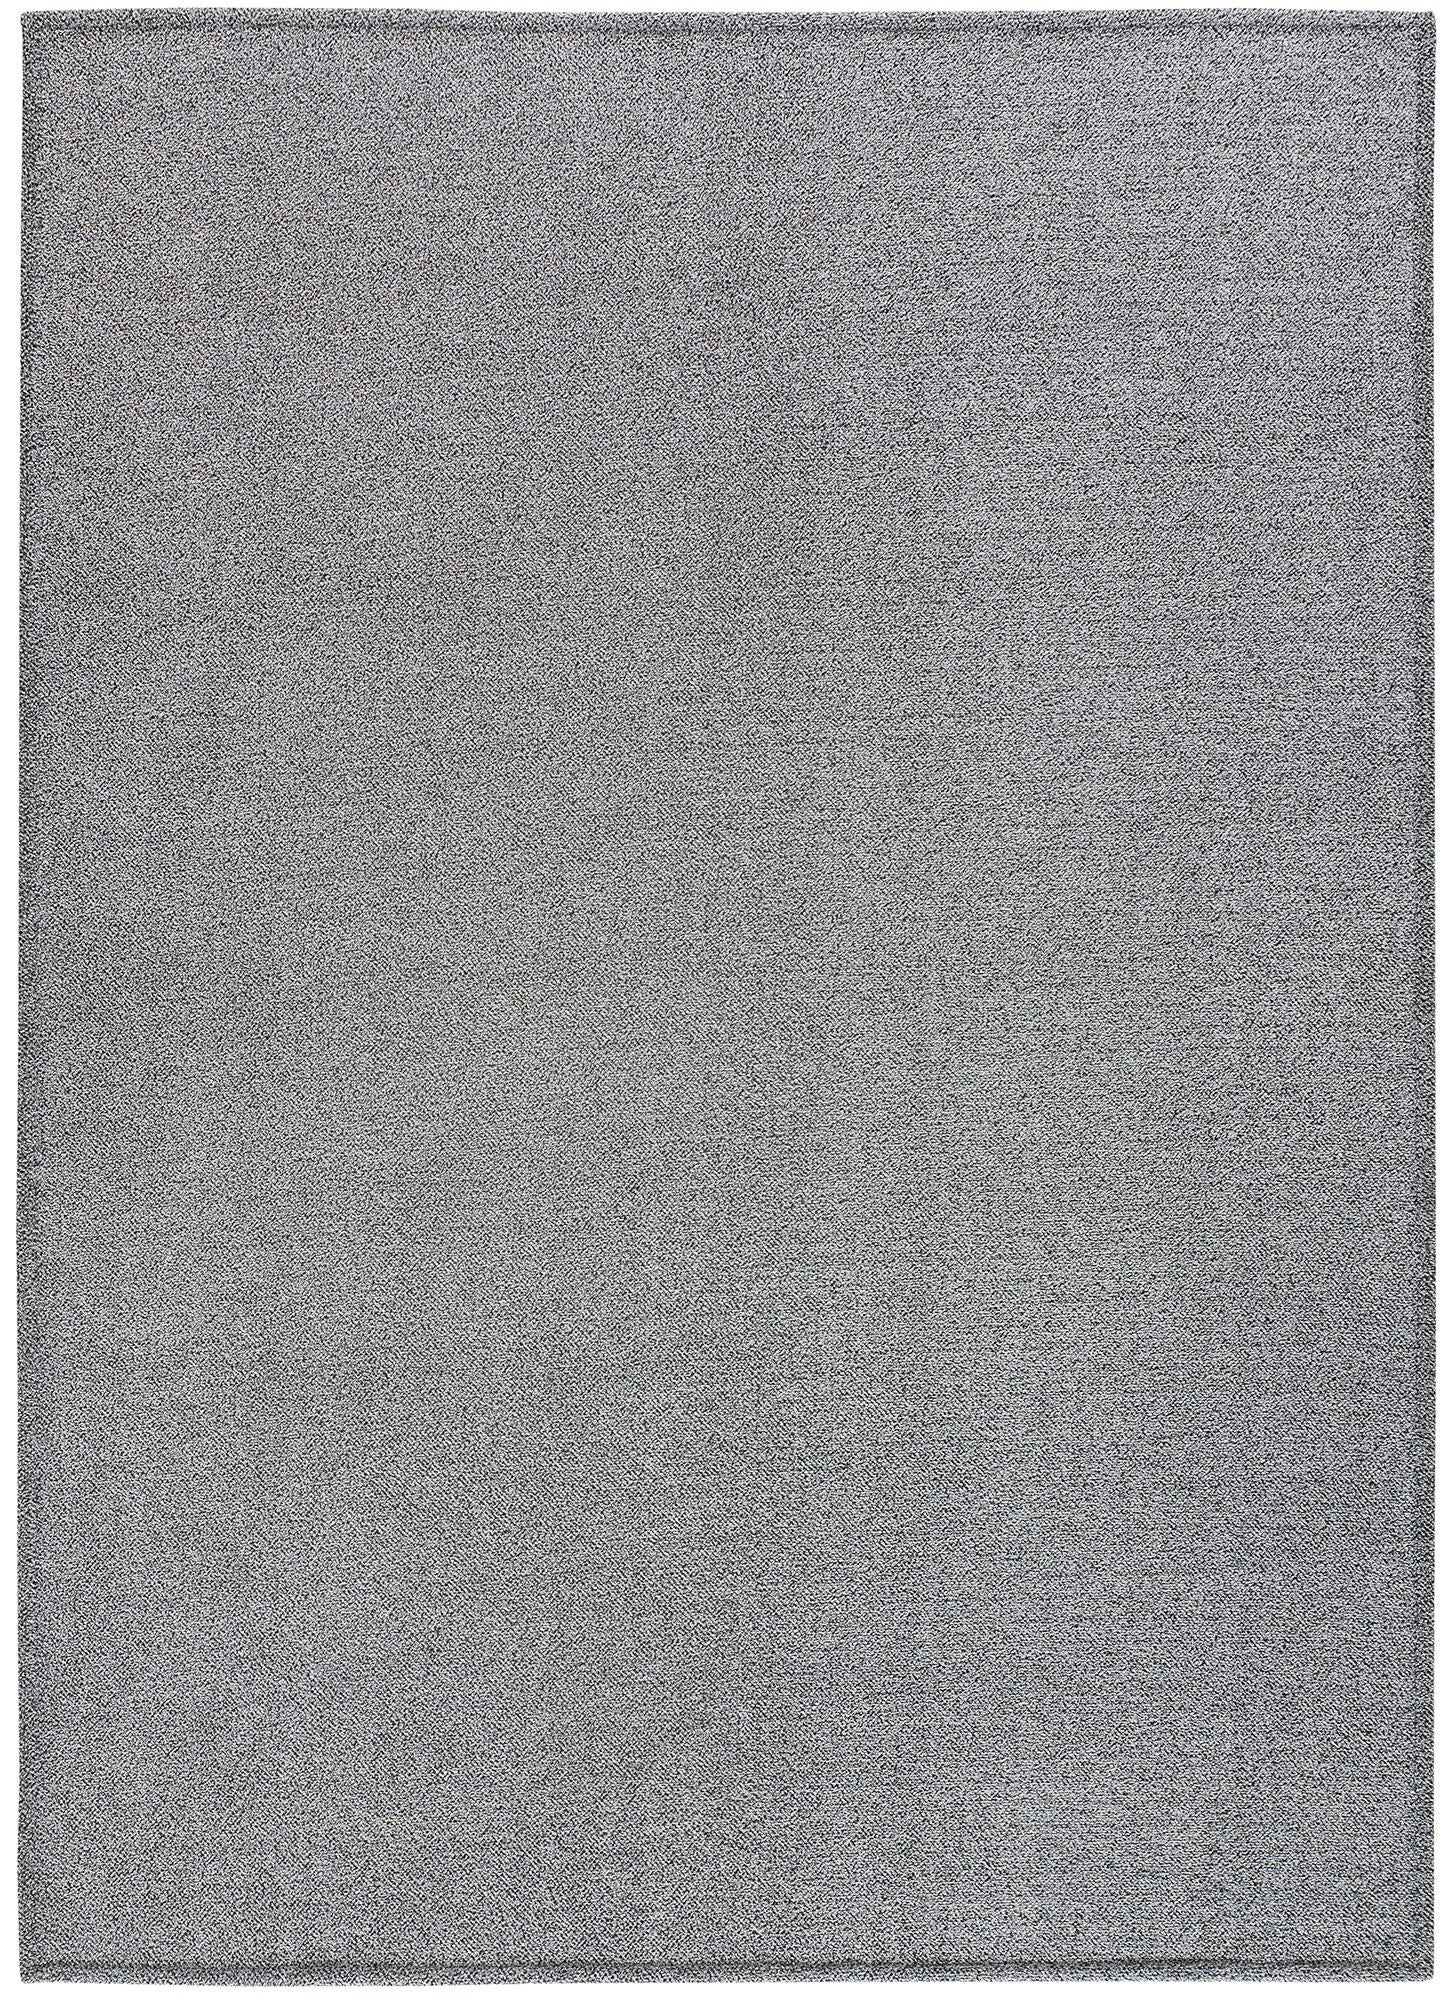 Alfombra poliéster saffi liso gris 120x170cm